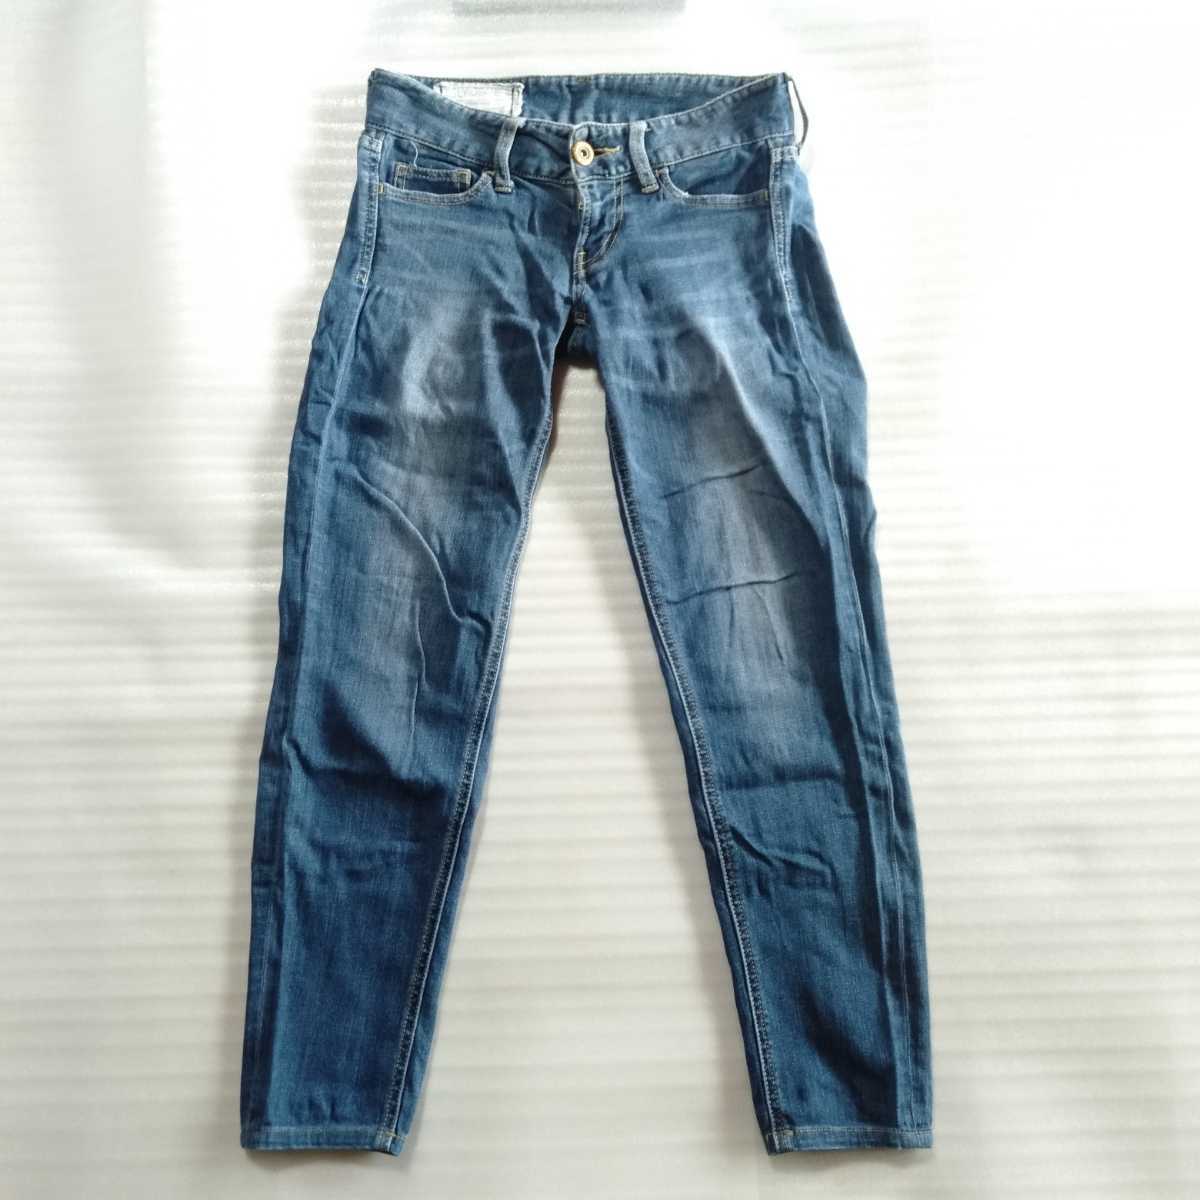 送料無料】sly jeansデニムパンツ サイズ23インチ スリムテーパード used加工ユーズド加工 スライジーンズ_画像1